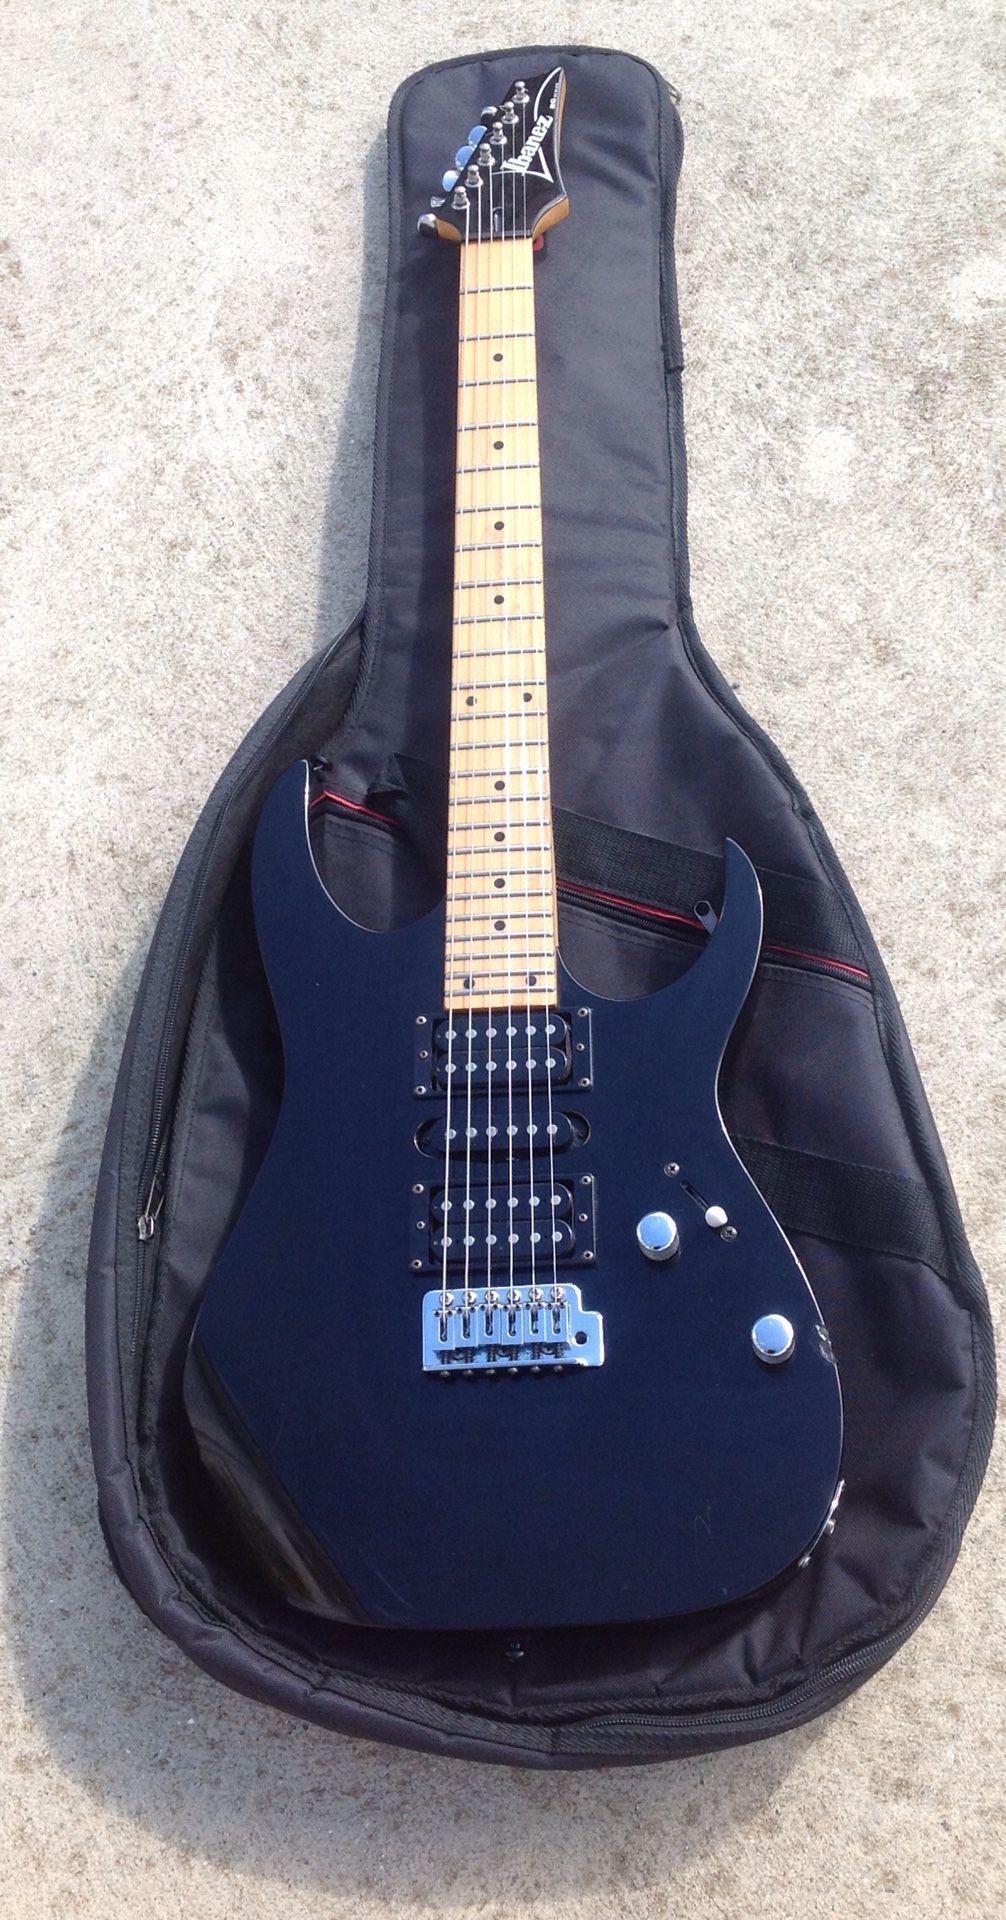 Ibanez RG 170 Mik electric guitar